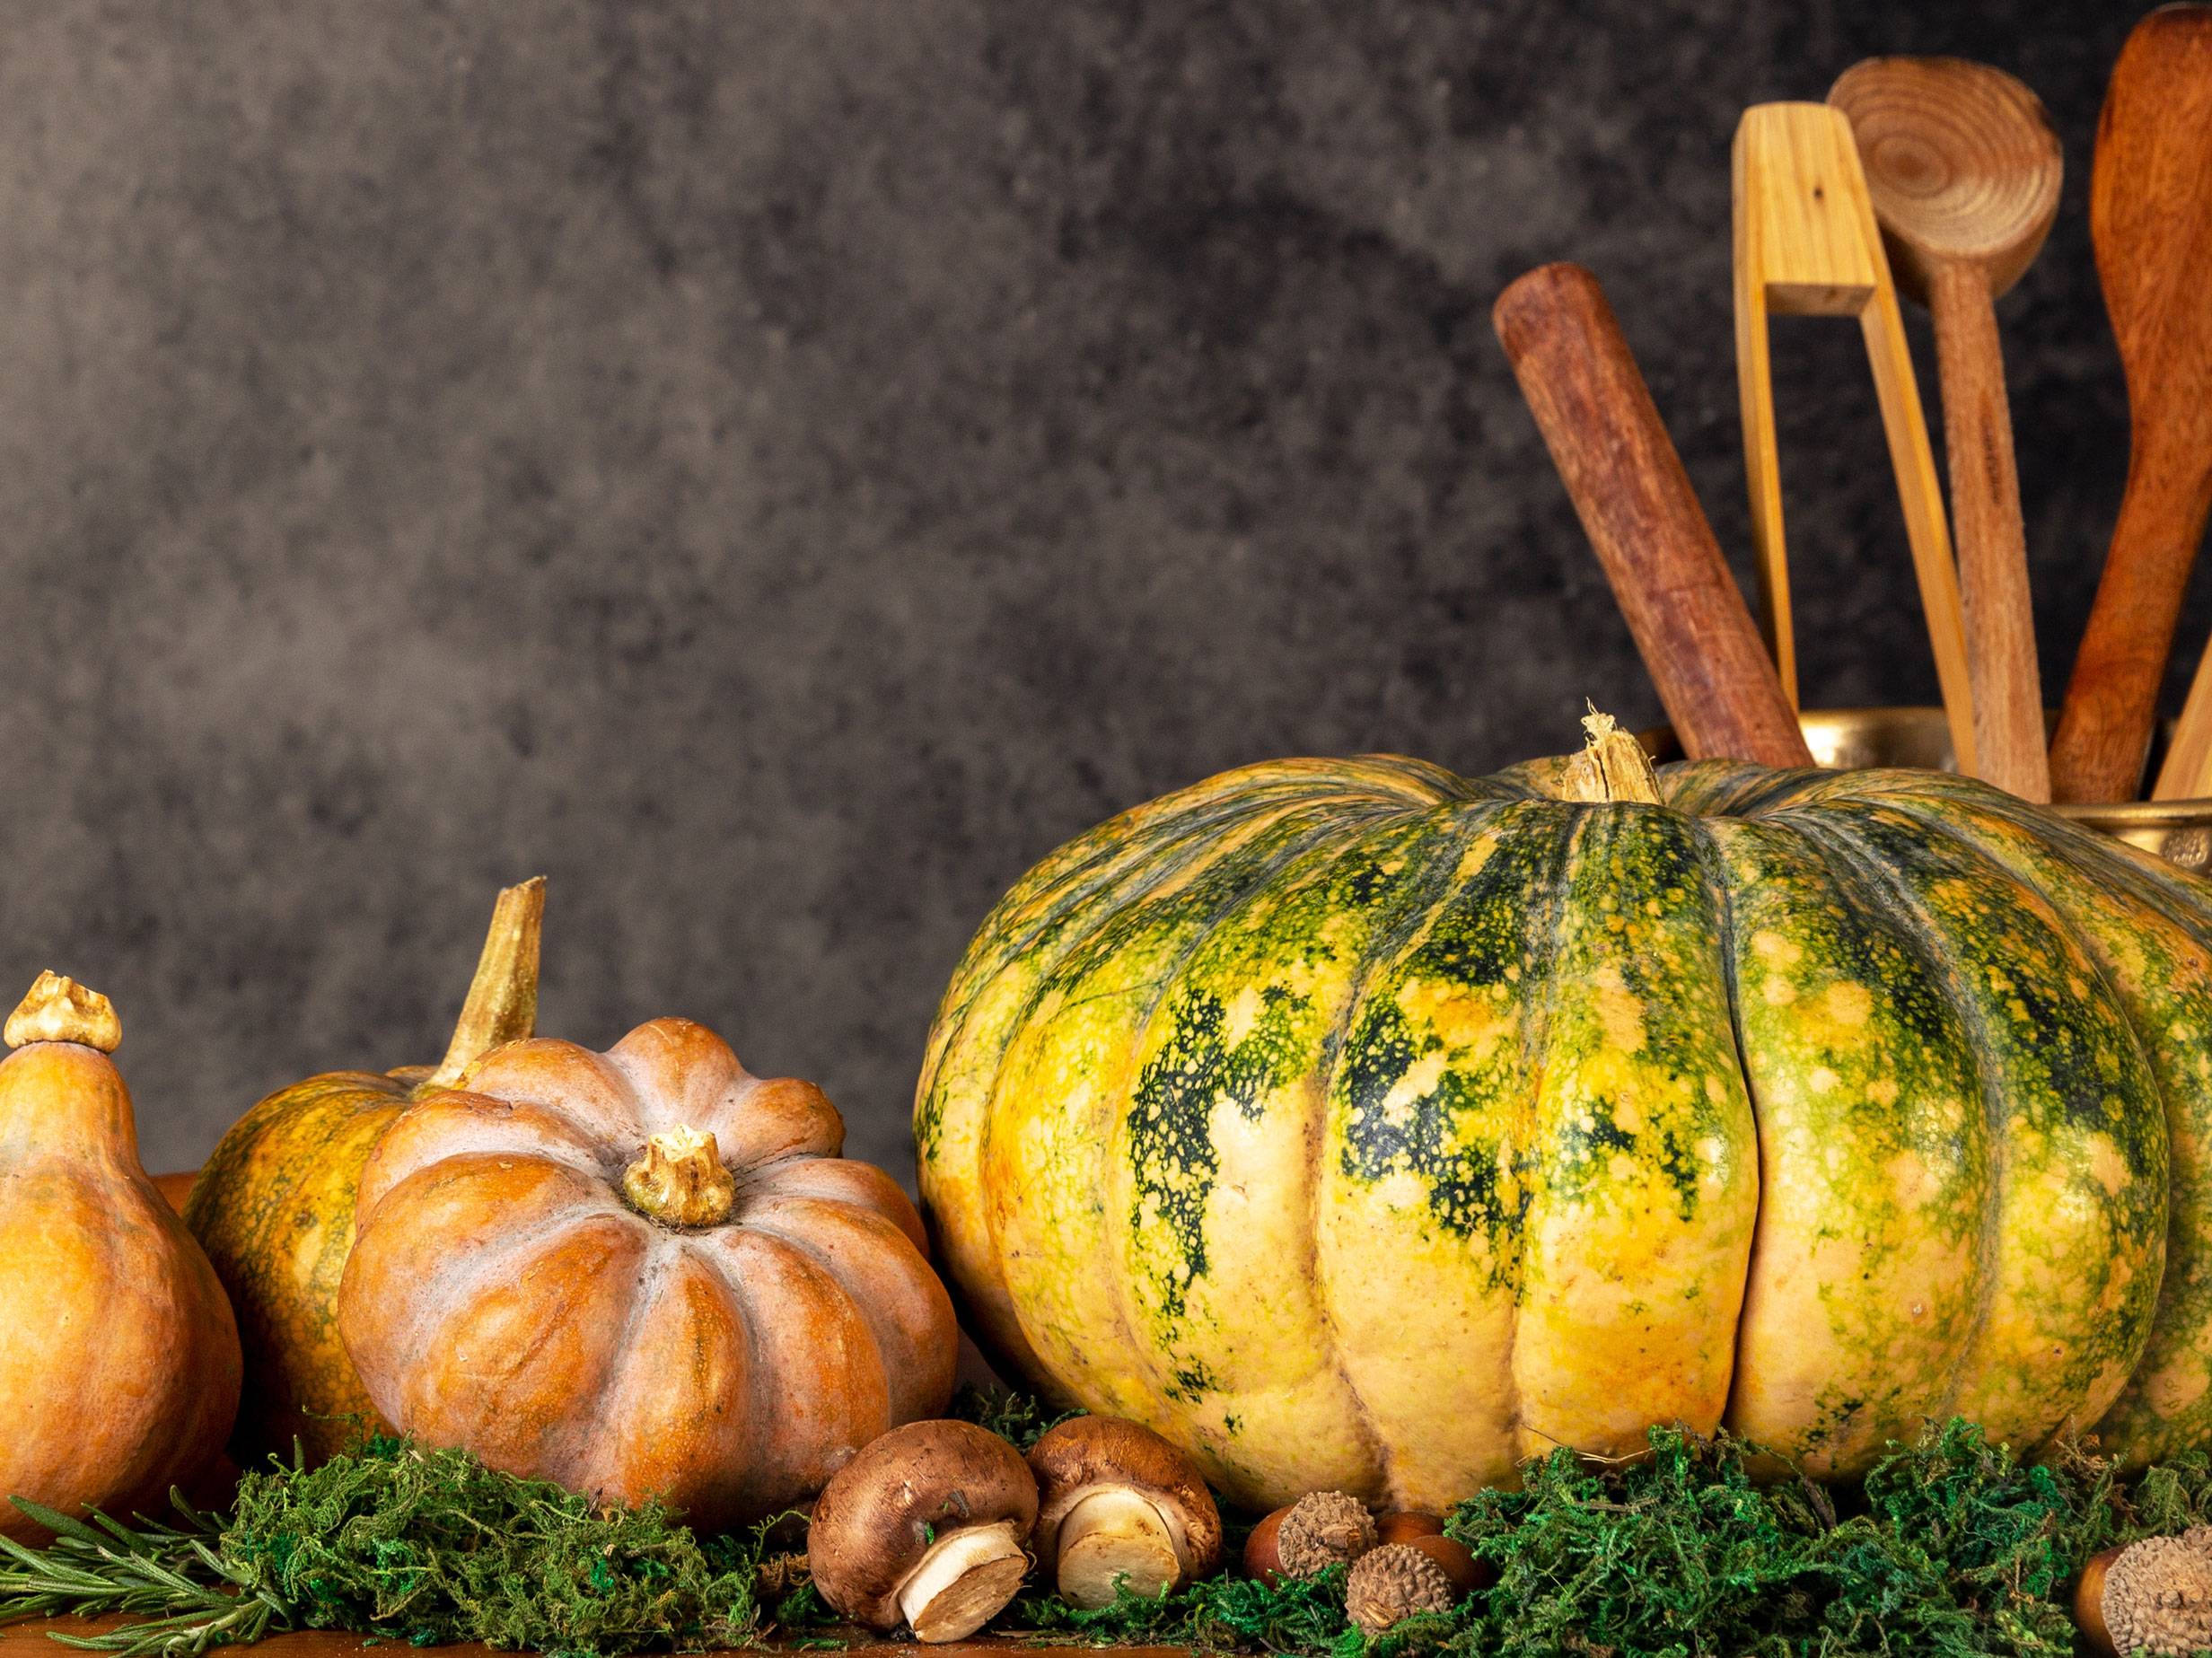 Perfekte Herbst-Kombi: Kürbis, Pilz und Wein